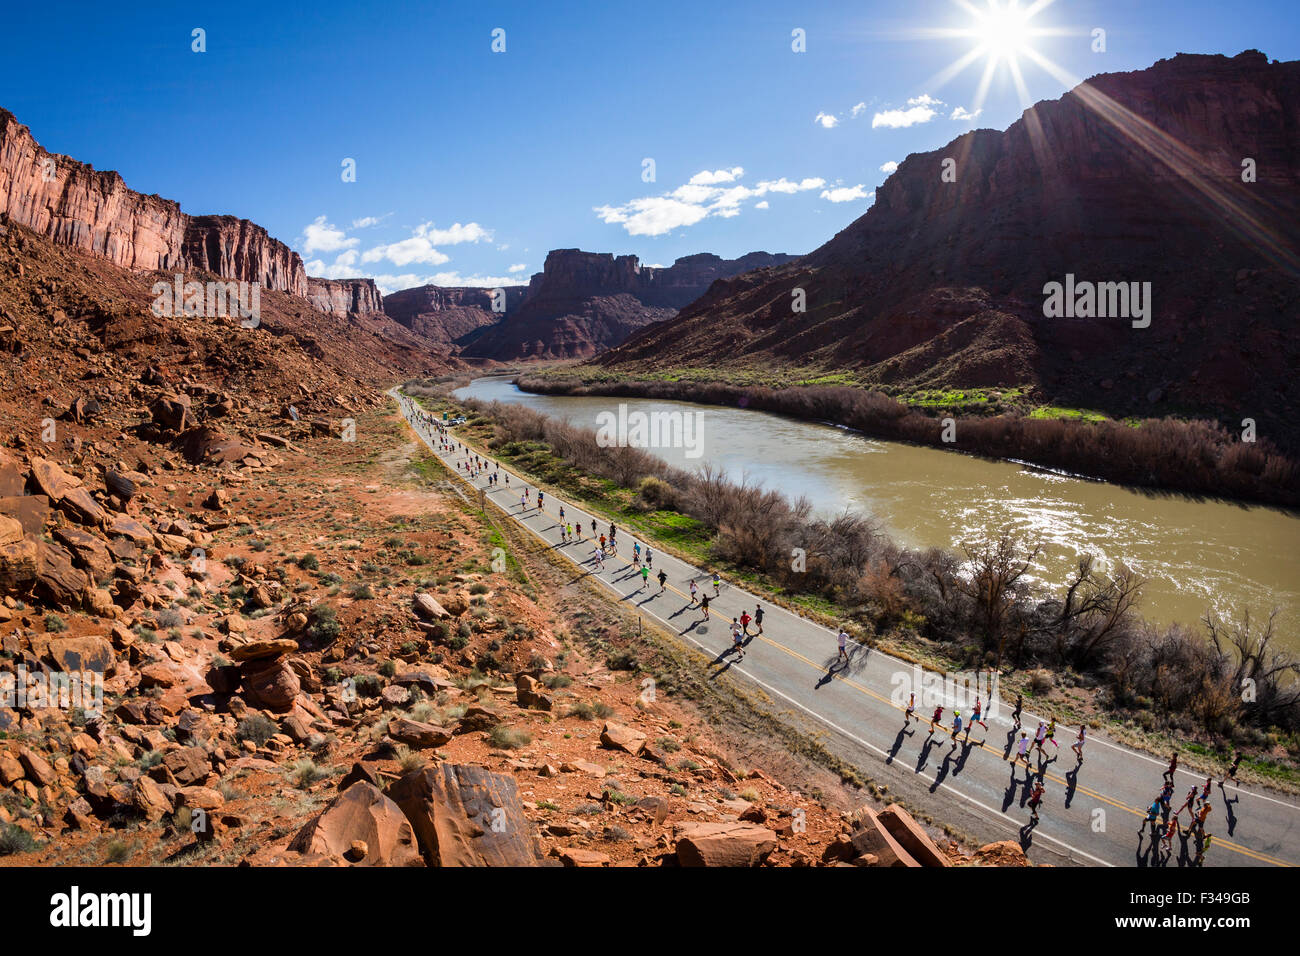 Grandes grupos de gente corriendo en una carretera próxima a un río durante una carrera. Foto de stock